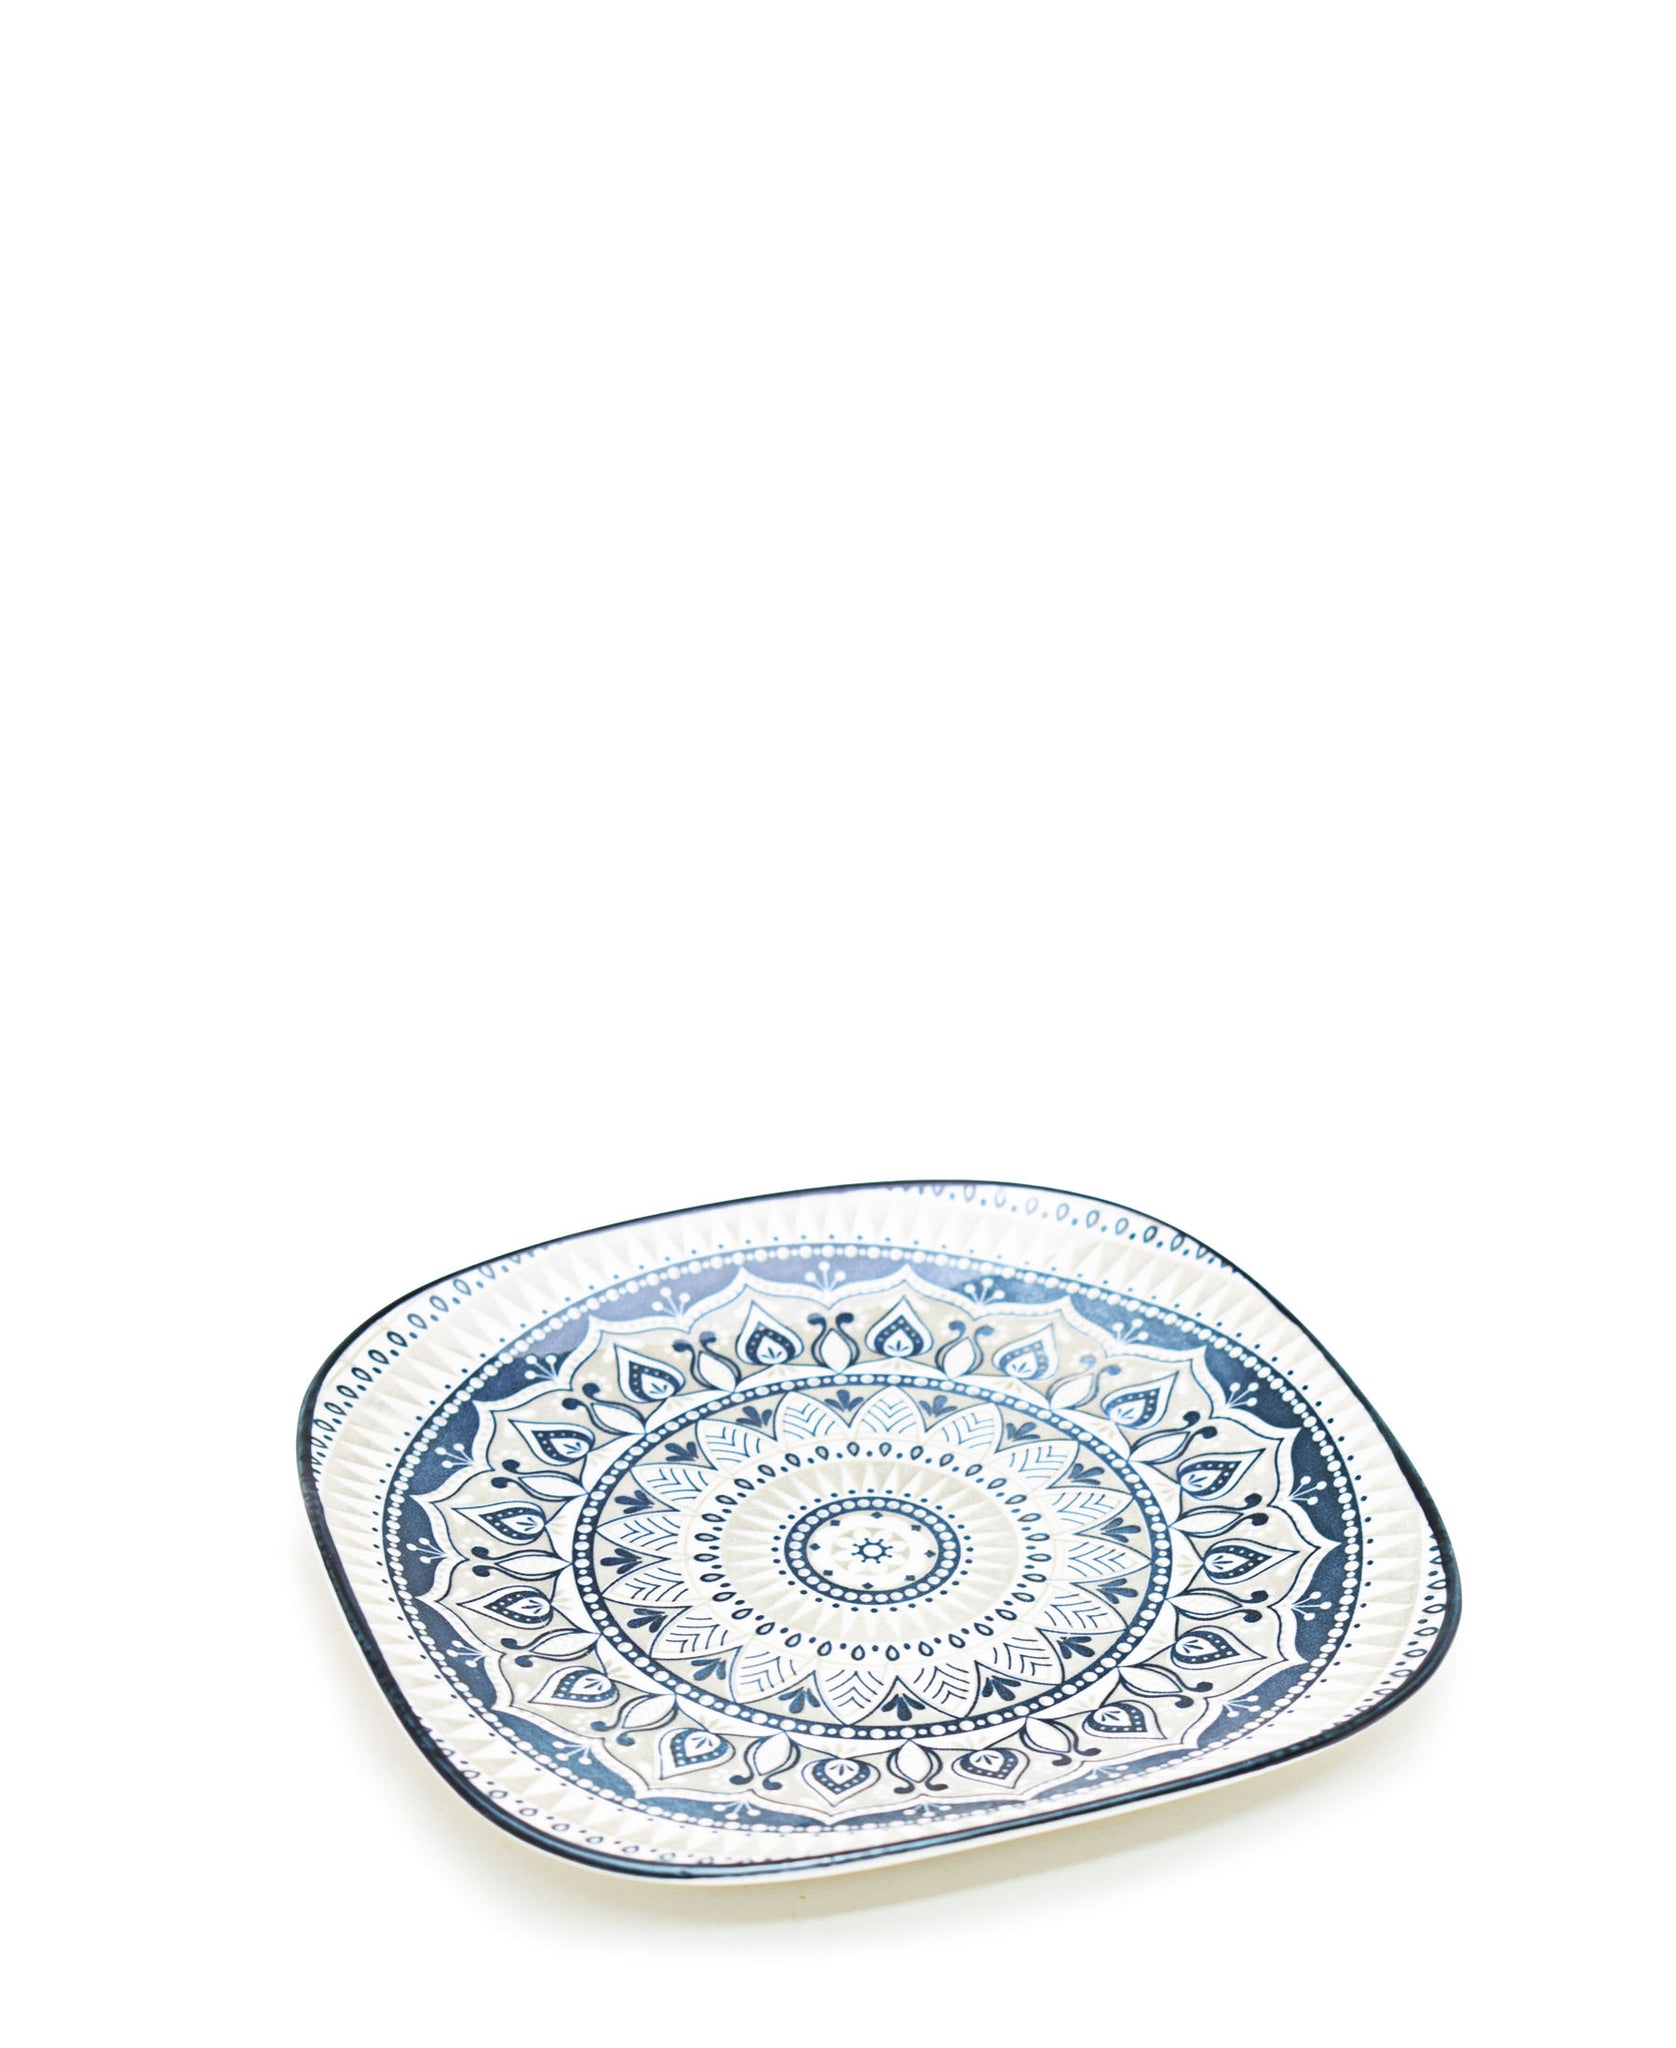 Shanghai Dinner Plate 22cm - White & Blue